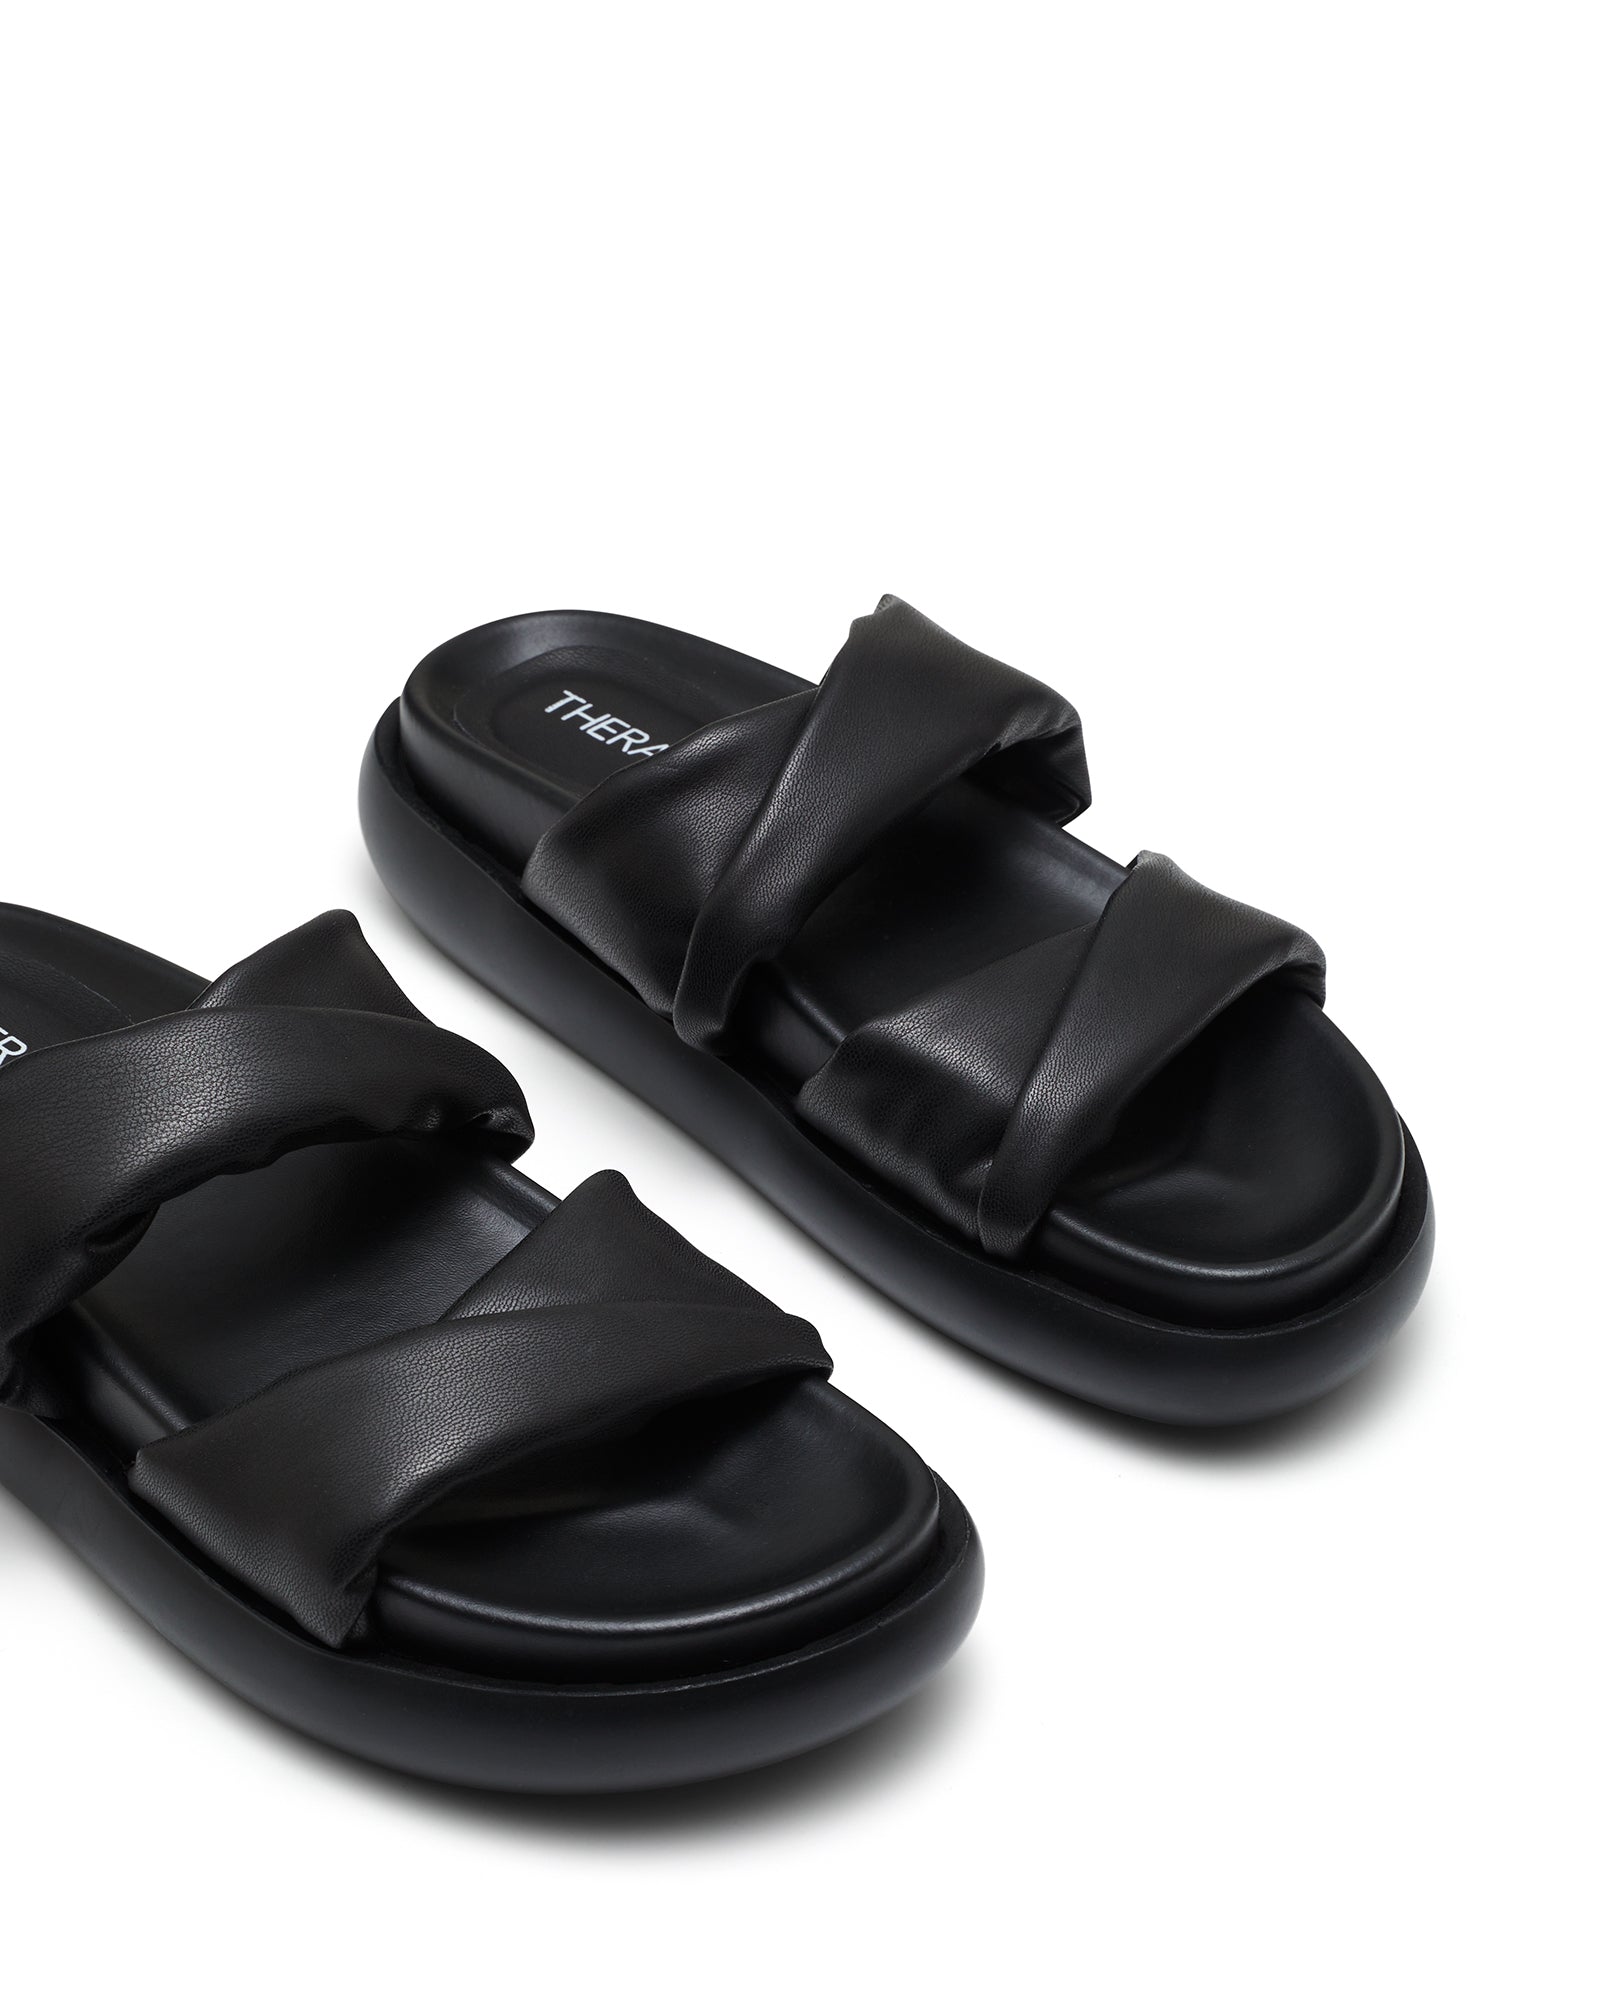 Therapy Shoes Vague Black | Women's Sandals | Slides | Platform | Flatform